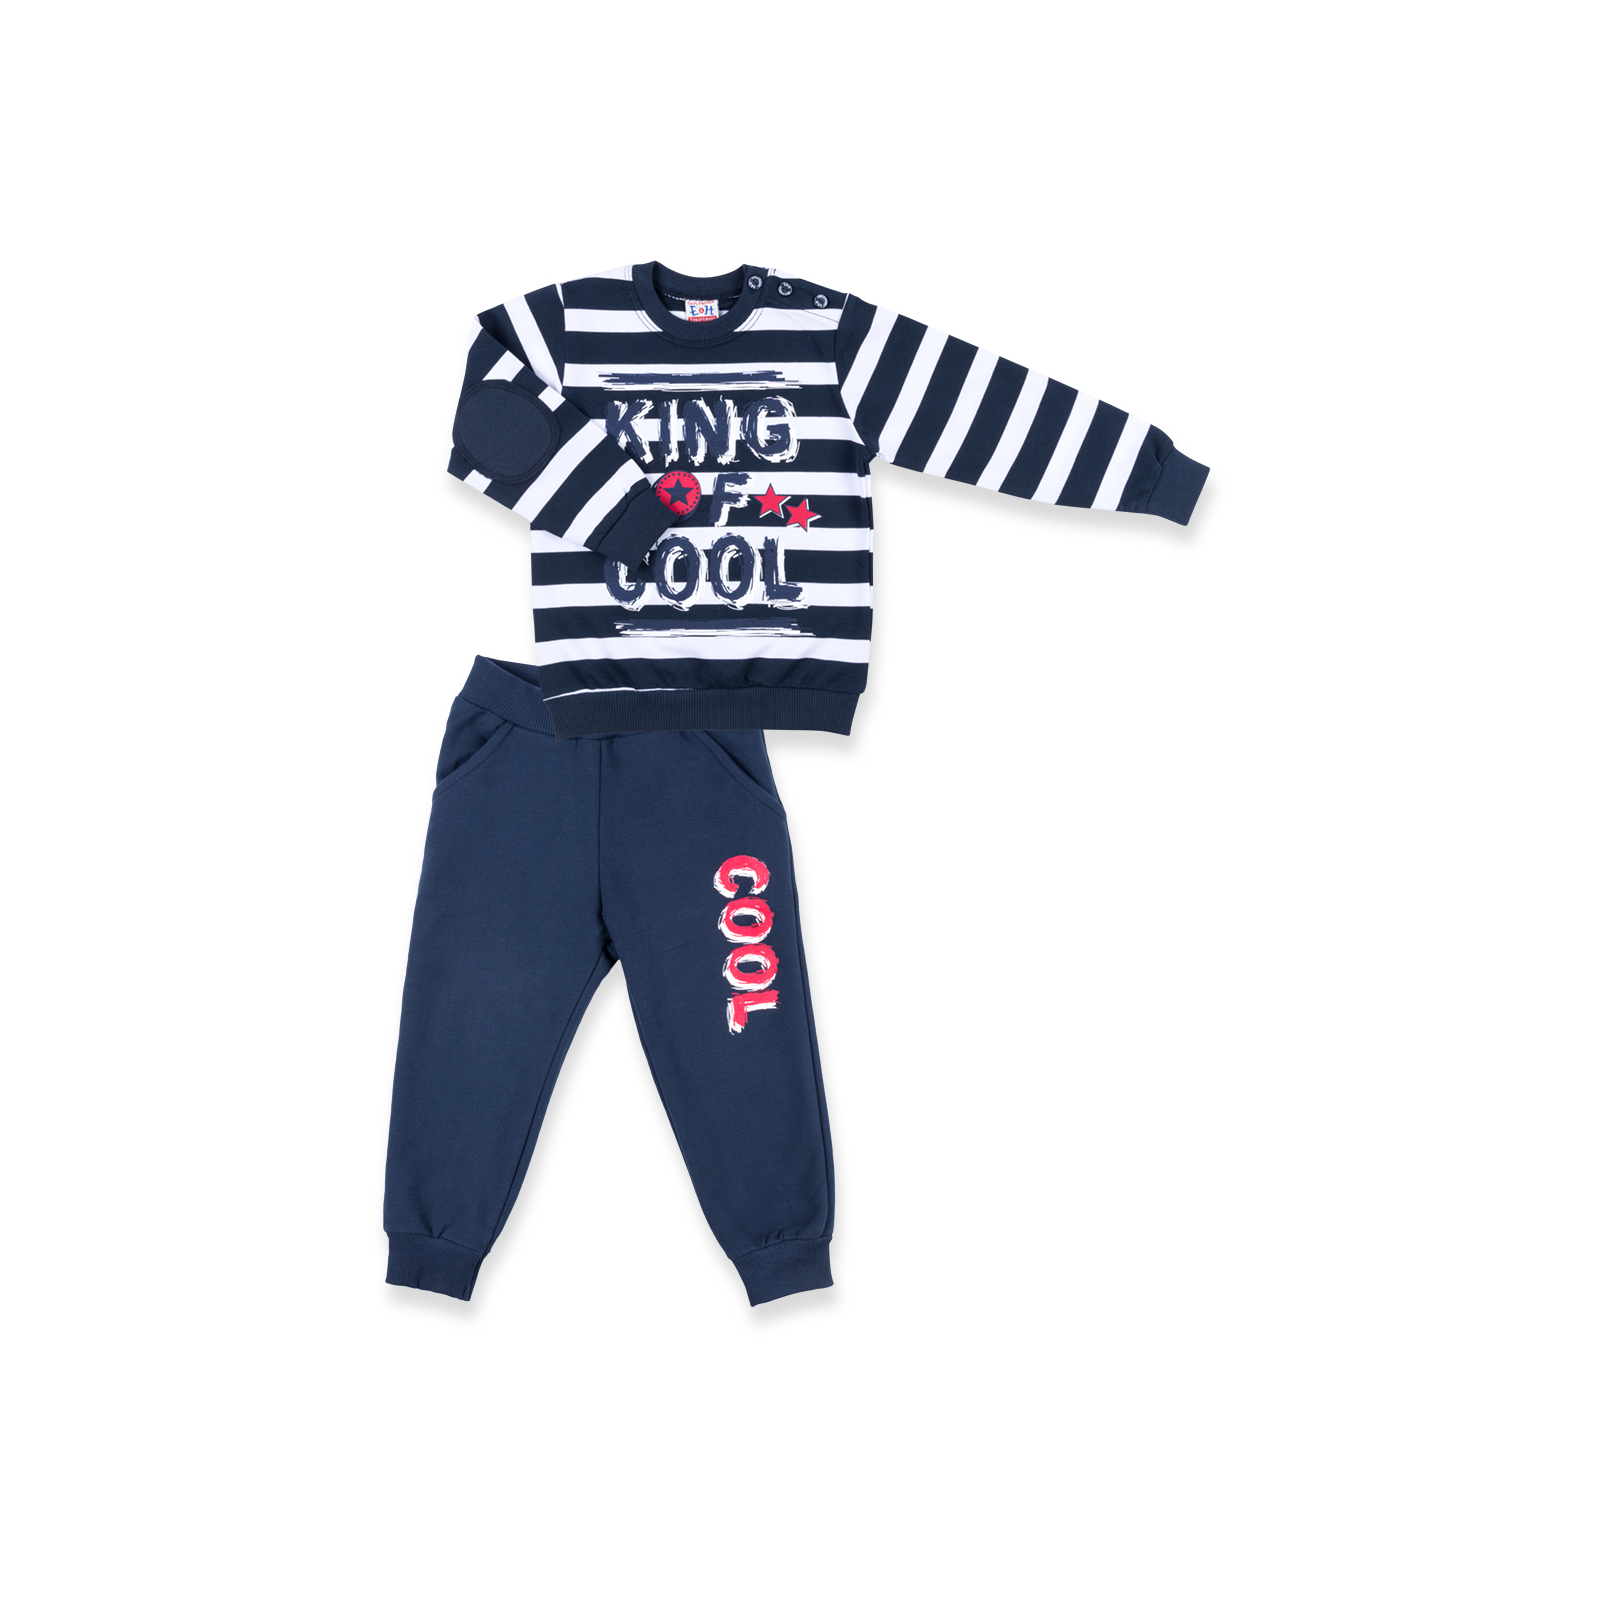 Набор детской одежды Breeze "KING OF COOL" (8632-116B-blue)